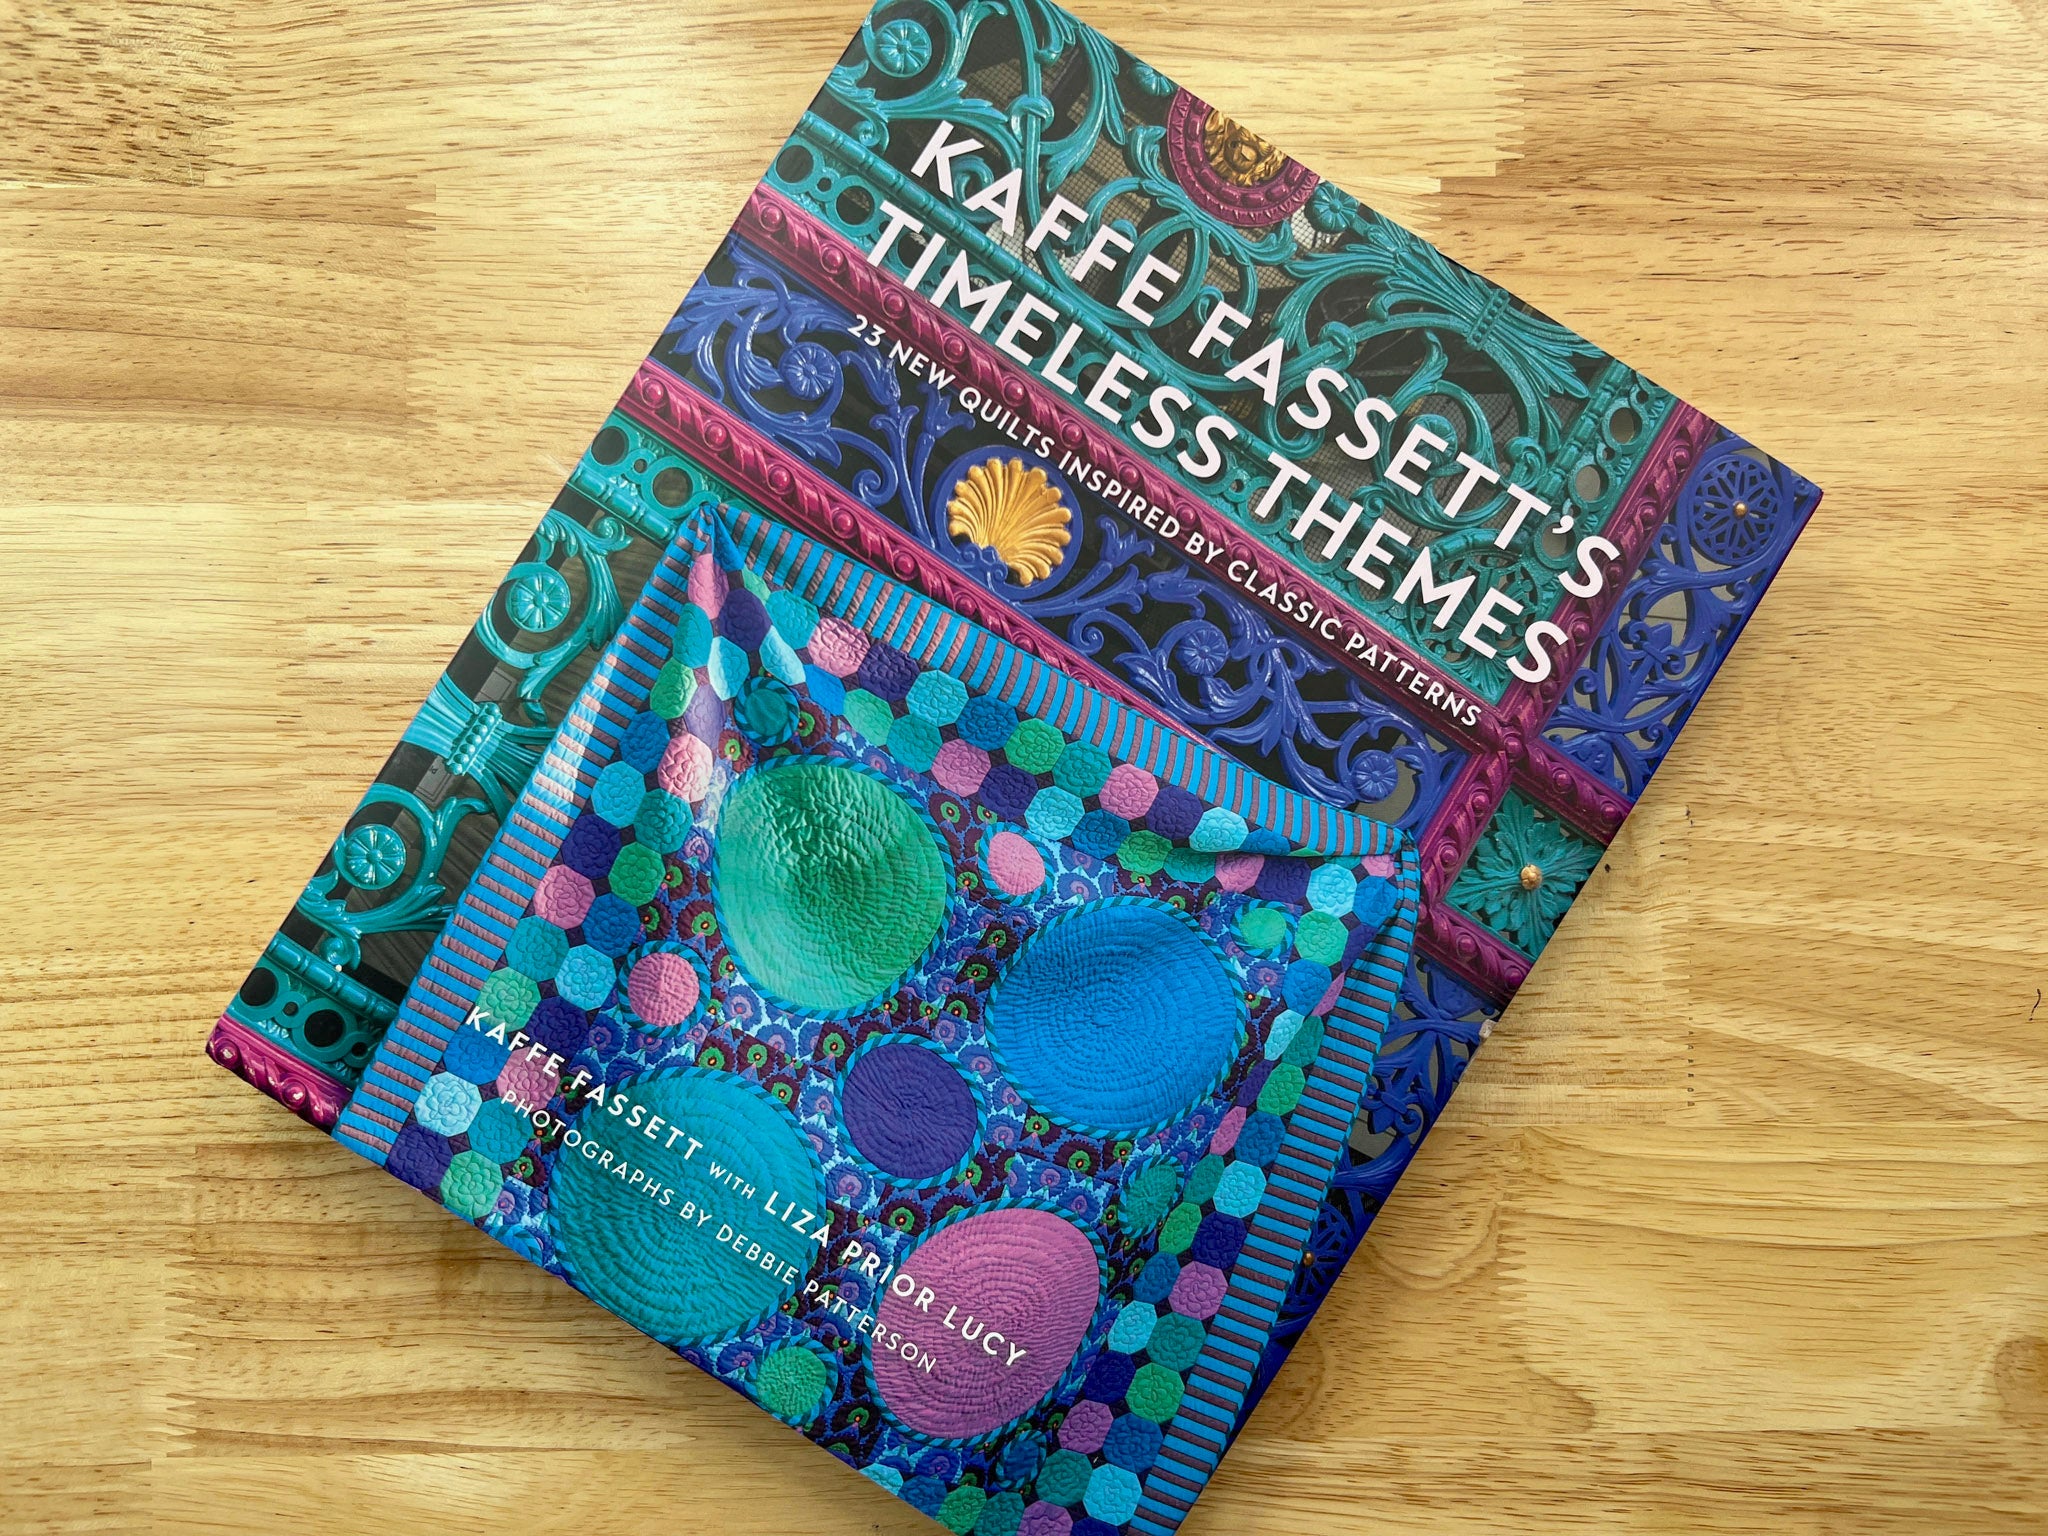 Timeless Themes, a book by Kaffe Fassett